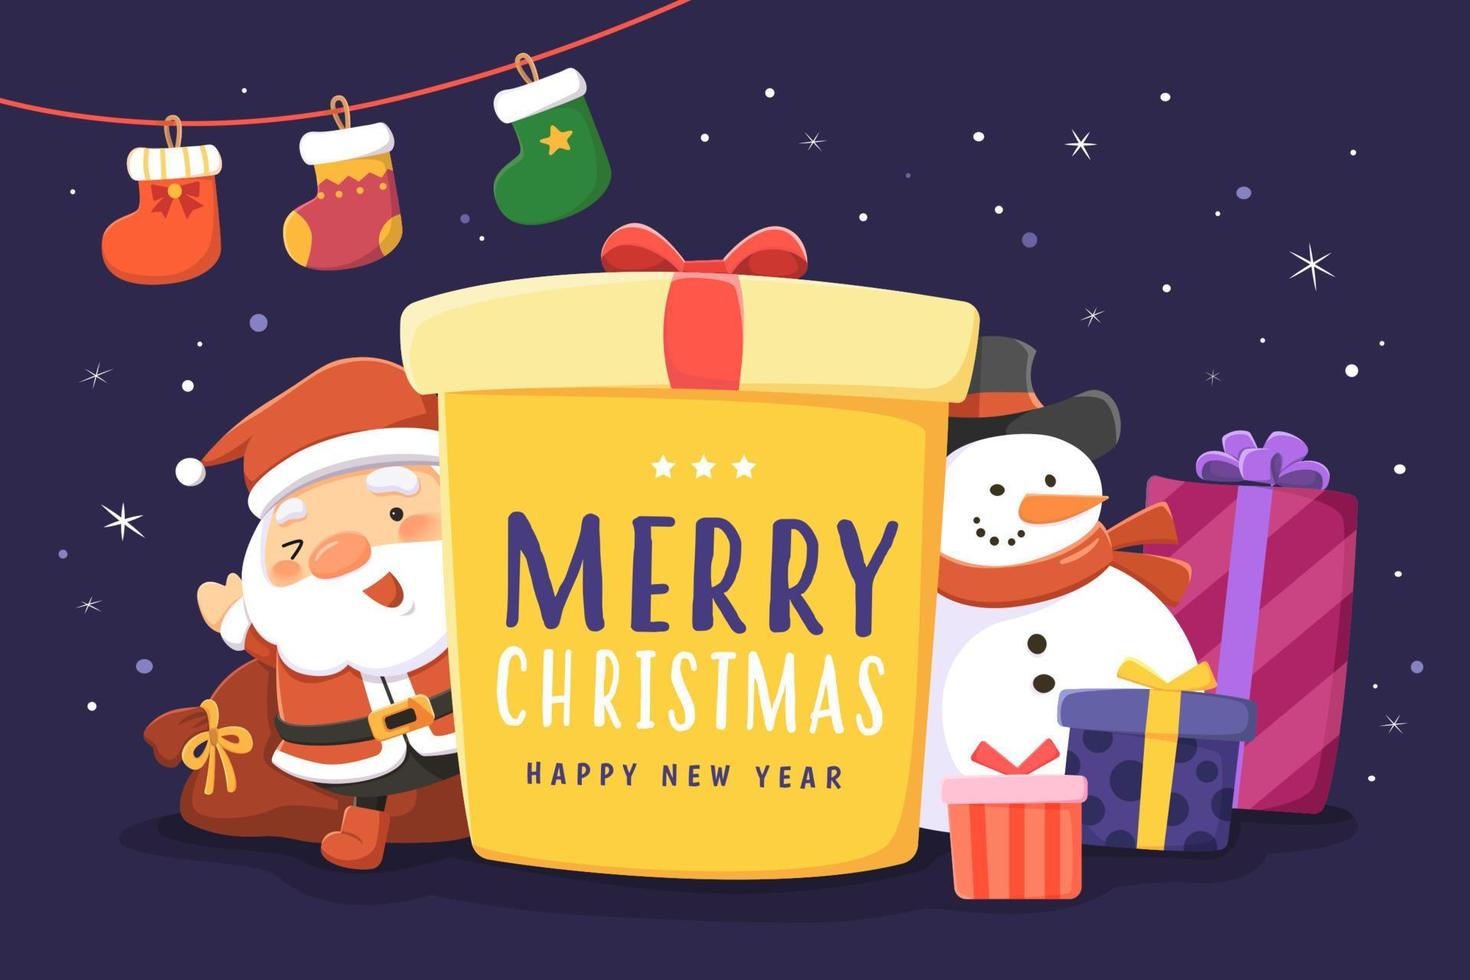 tarjeta de felicitación de feliz navidad. ilustración plana de una gran caja de regalo con santa claus, muñeco de nieve y regalos en la víspera de navidad vector